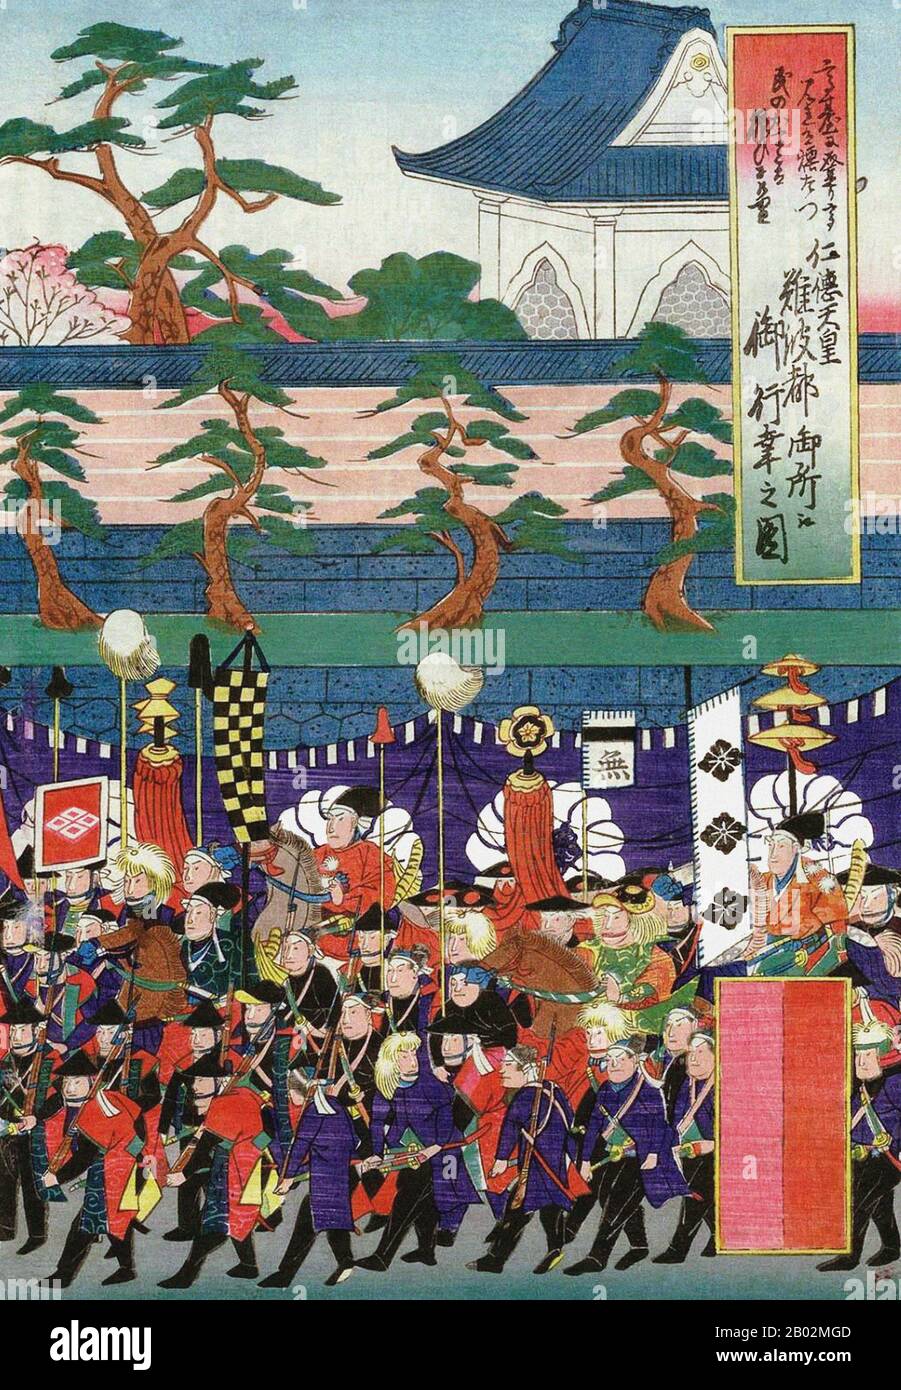 Kaiser Nintoku (仁徳天皇 Nintoku-tennō) war gemäß der traditionellen Thronfolge der 16. Kaiser von Japan. Dem Leben oder der Herrschaft dieses Kaisers können keine festen Daten zugeordnet werden, aber er gilt konventionell als regiert von 313-399 CE. Nintoku gilt Historikern als "legendärer Kaiser" des 5. Die Regierungszeit von Kaiser Kimmei (509?-571), dem 29. Kaiser, ist die erste, für die die zeitgenössische Geschichtsschreibung nachweisbare Daten zuordnen kann; die konventionell akzeptierten Namen und Daten der frühen Kaiser waren jedoch erst ab Th als "traditionell" zu bestätigen Stockfoto